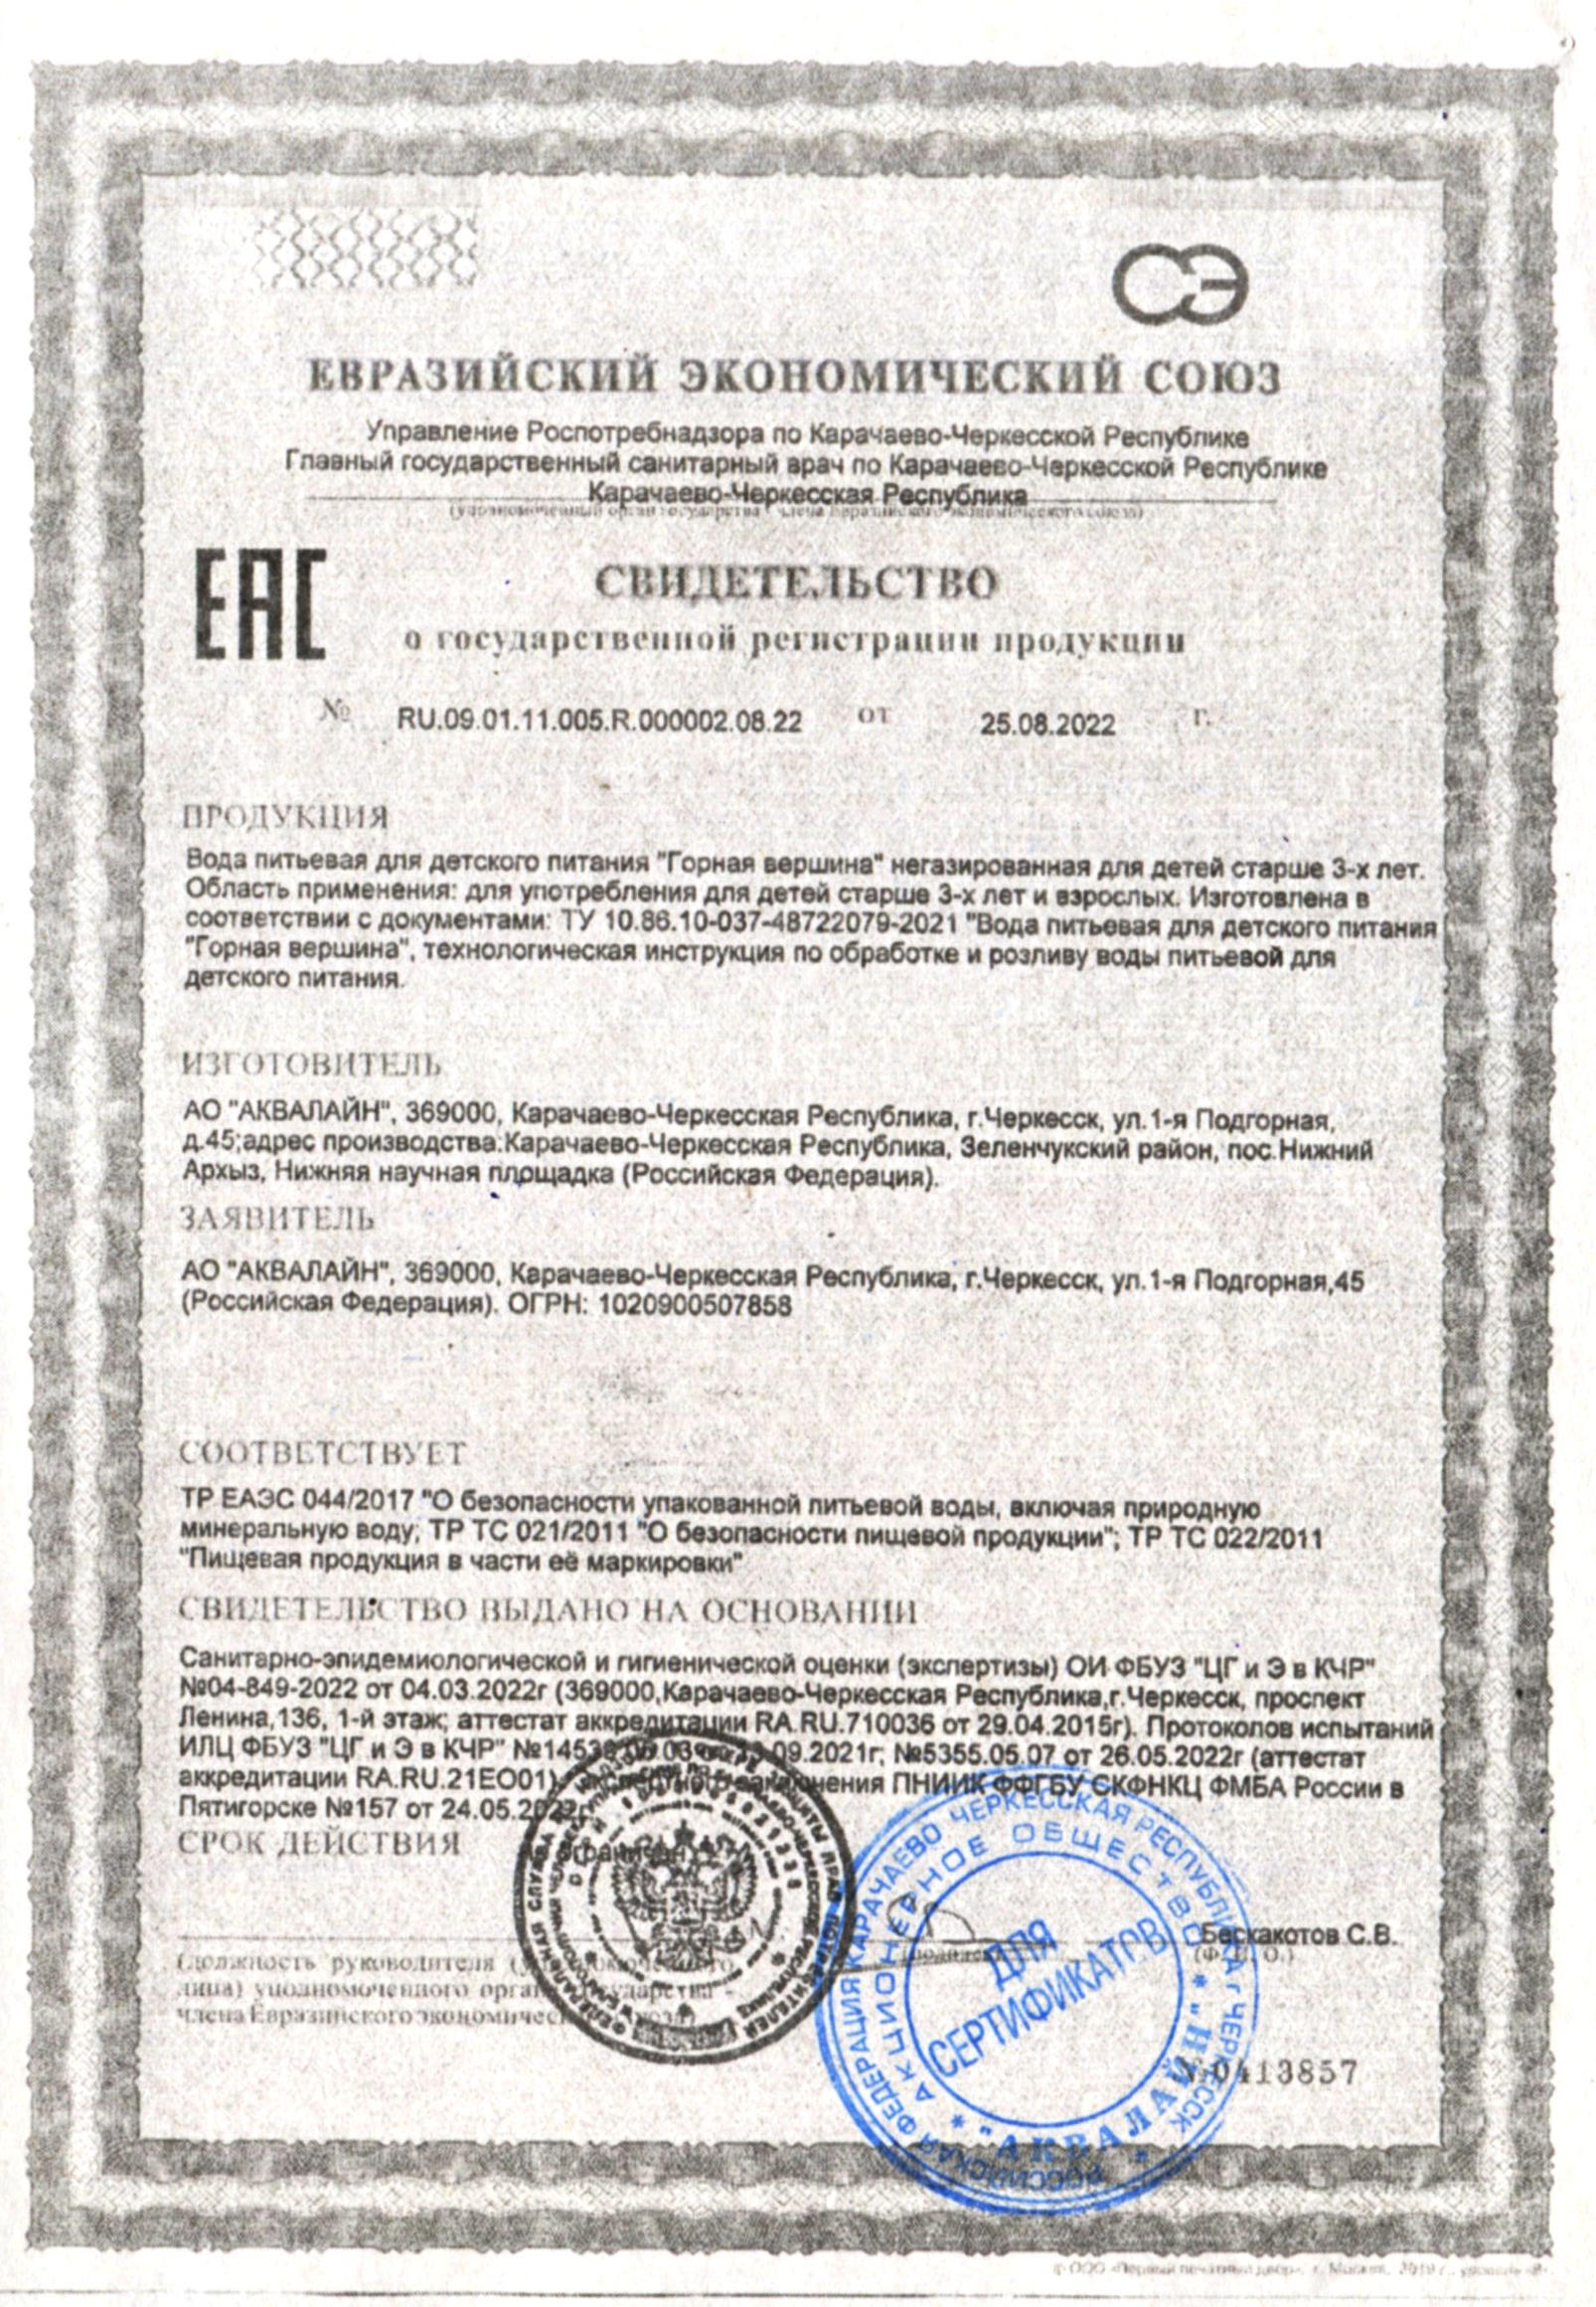 Сертификат соответствия питьевой воды Верта 19 литров